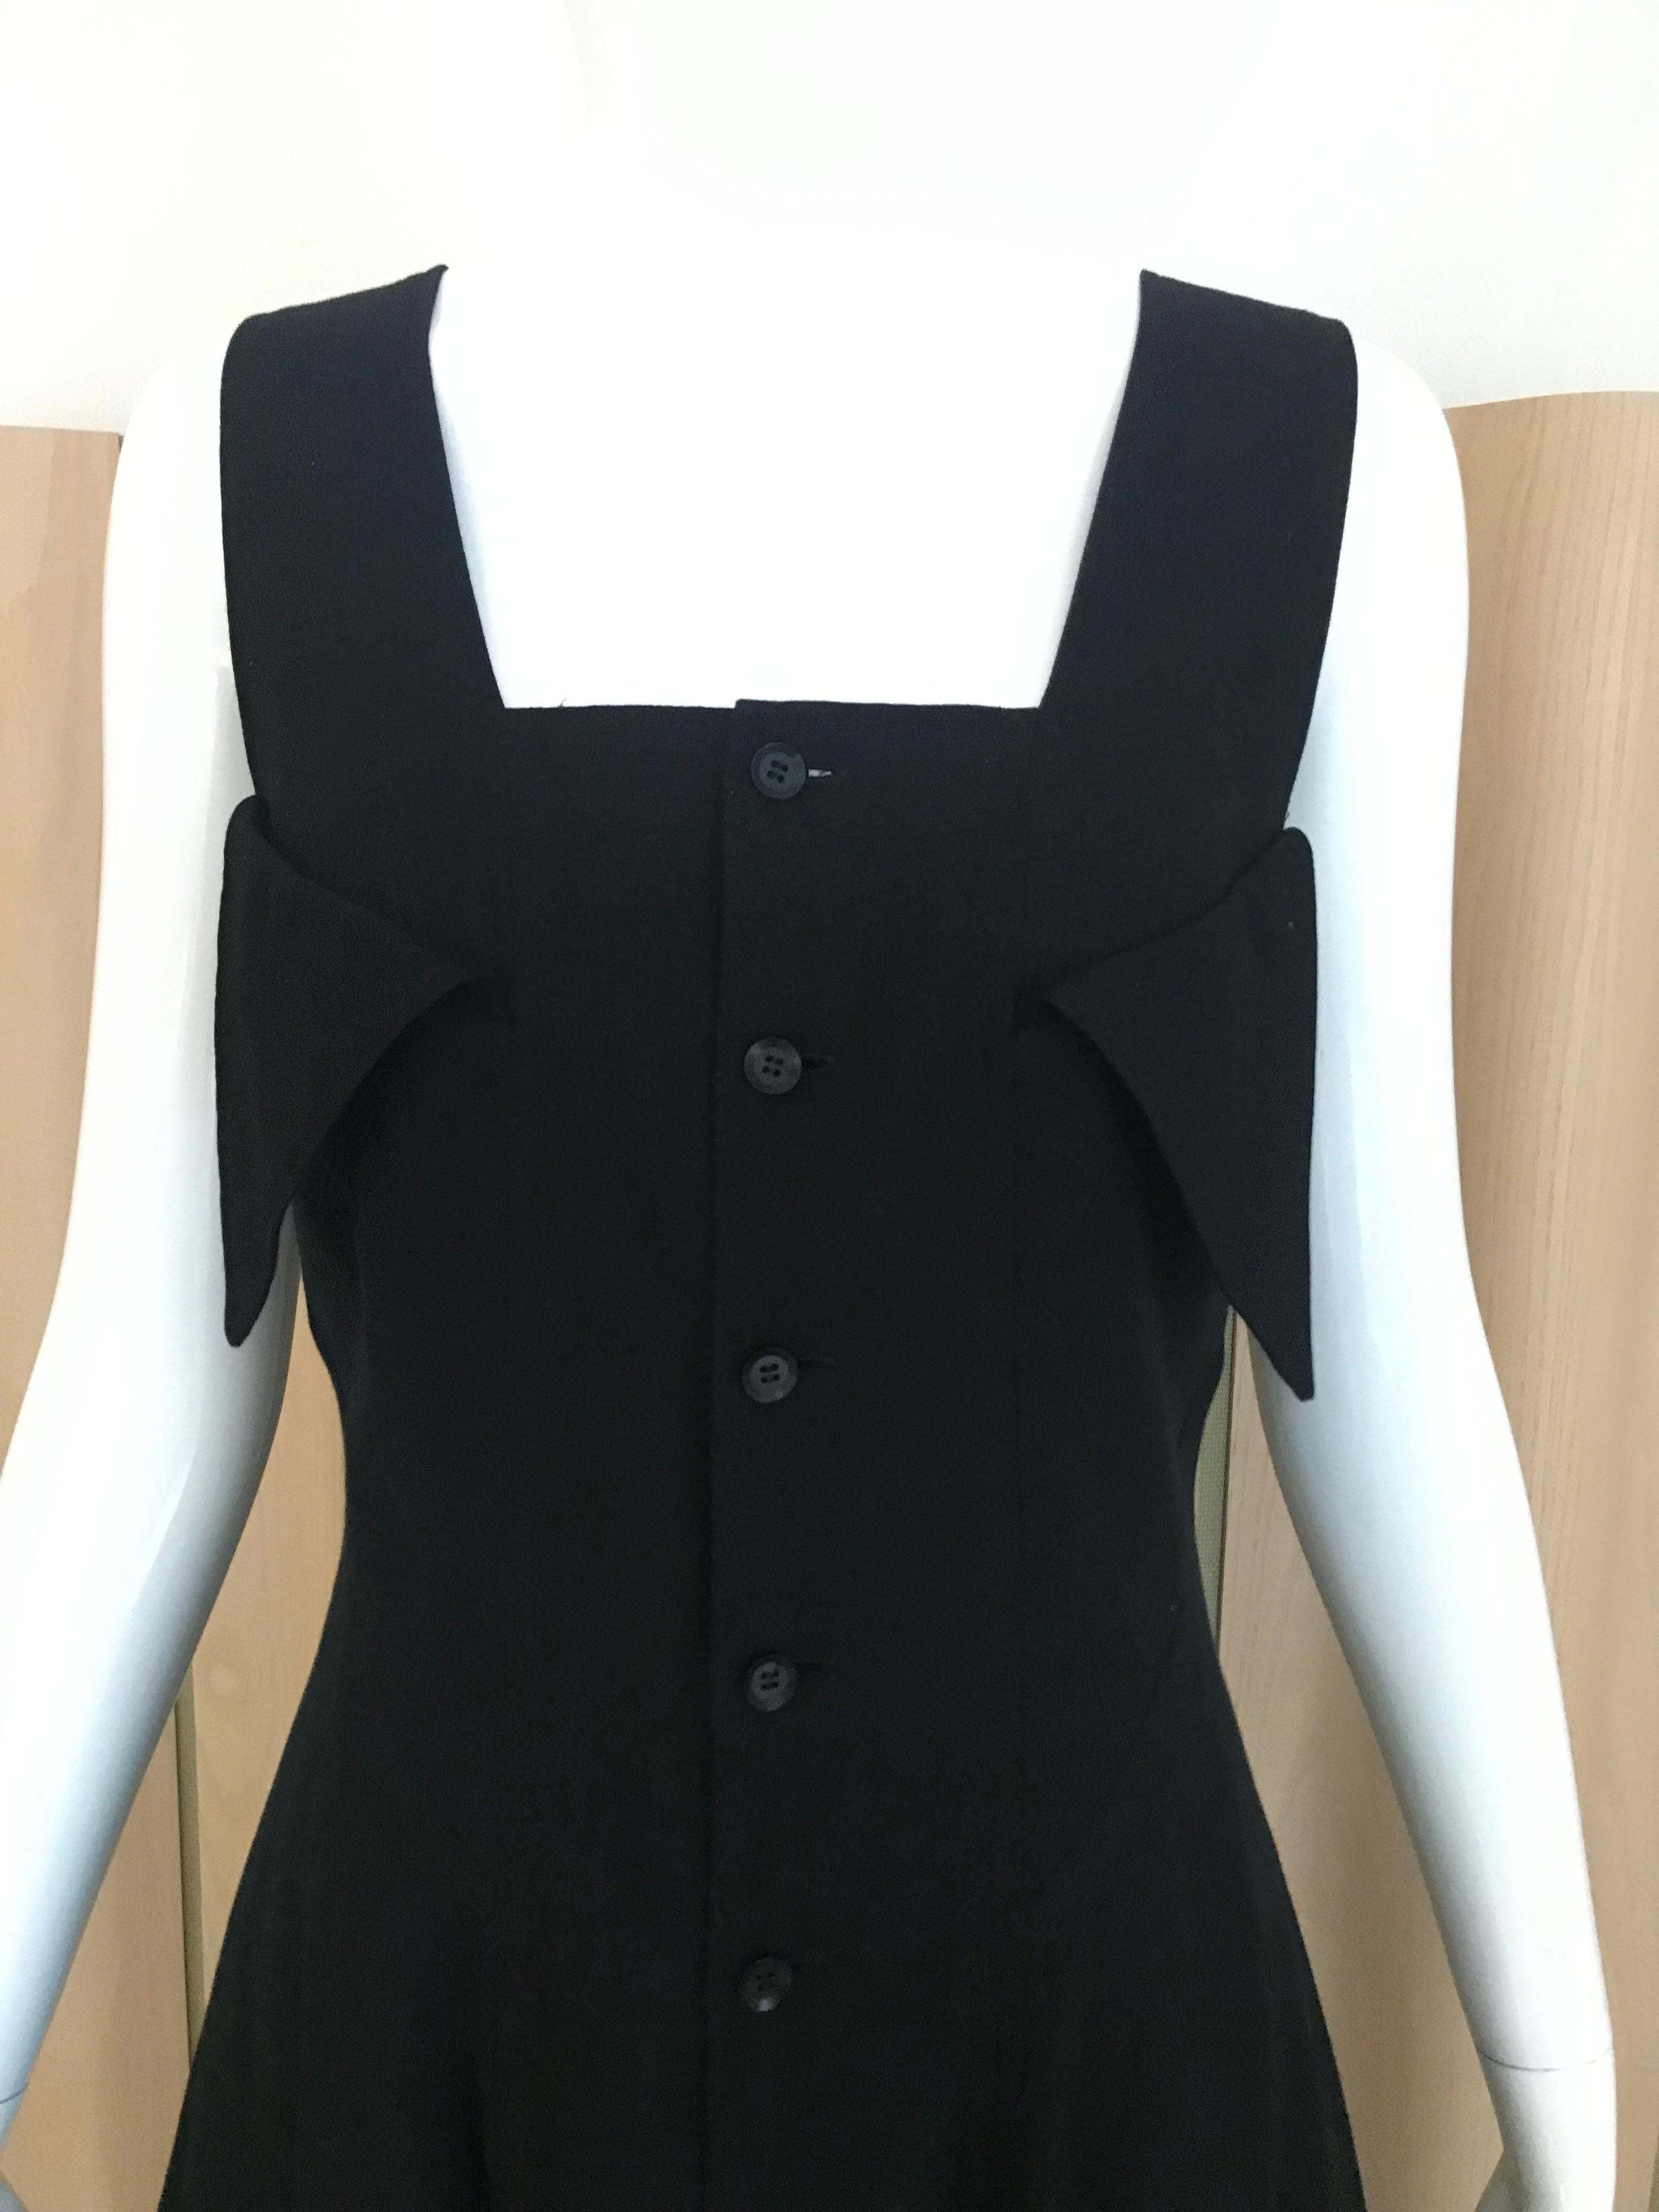 Yohji Yamamoto Soft black rayon pinafore dress New with tag.
Size: 6